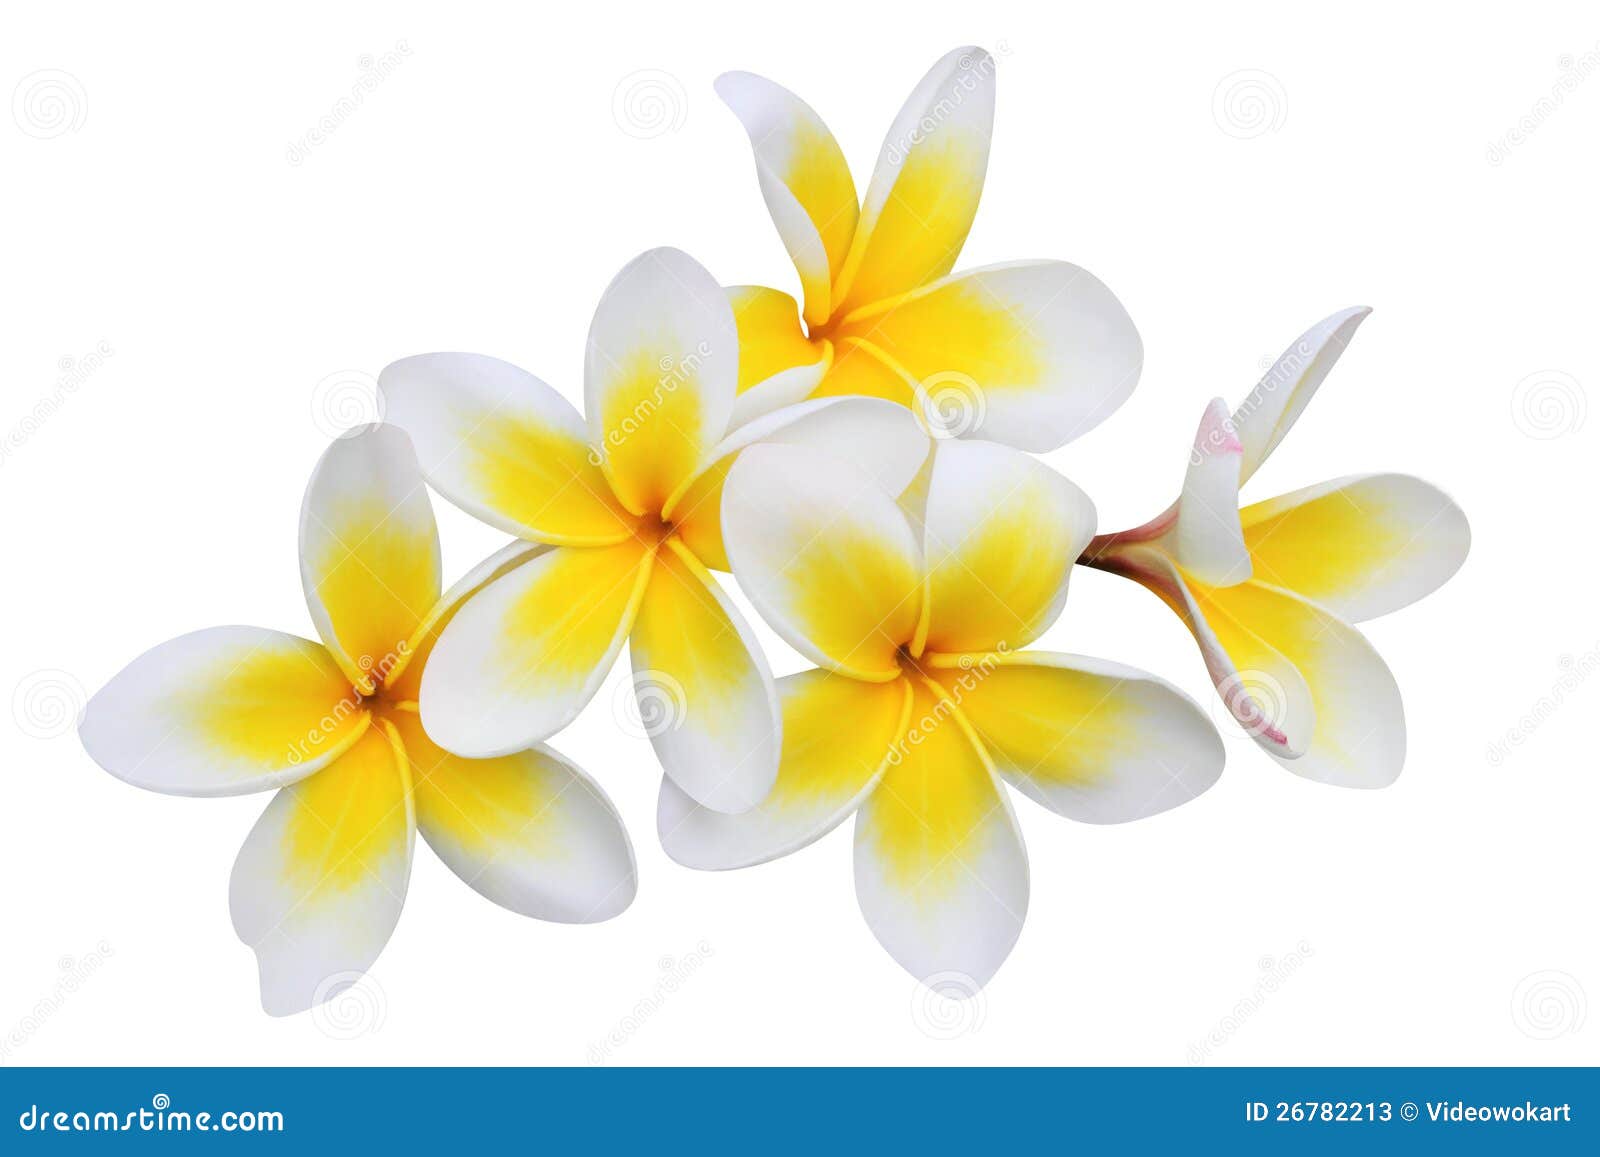 Frangipani (plumeria) Flowers Isolated On White Stock Image - Image